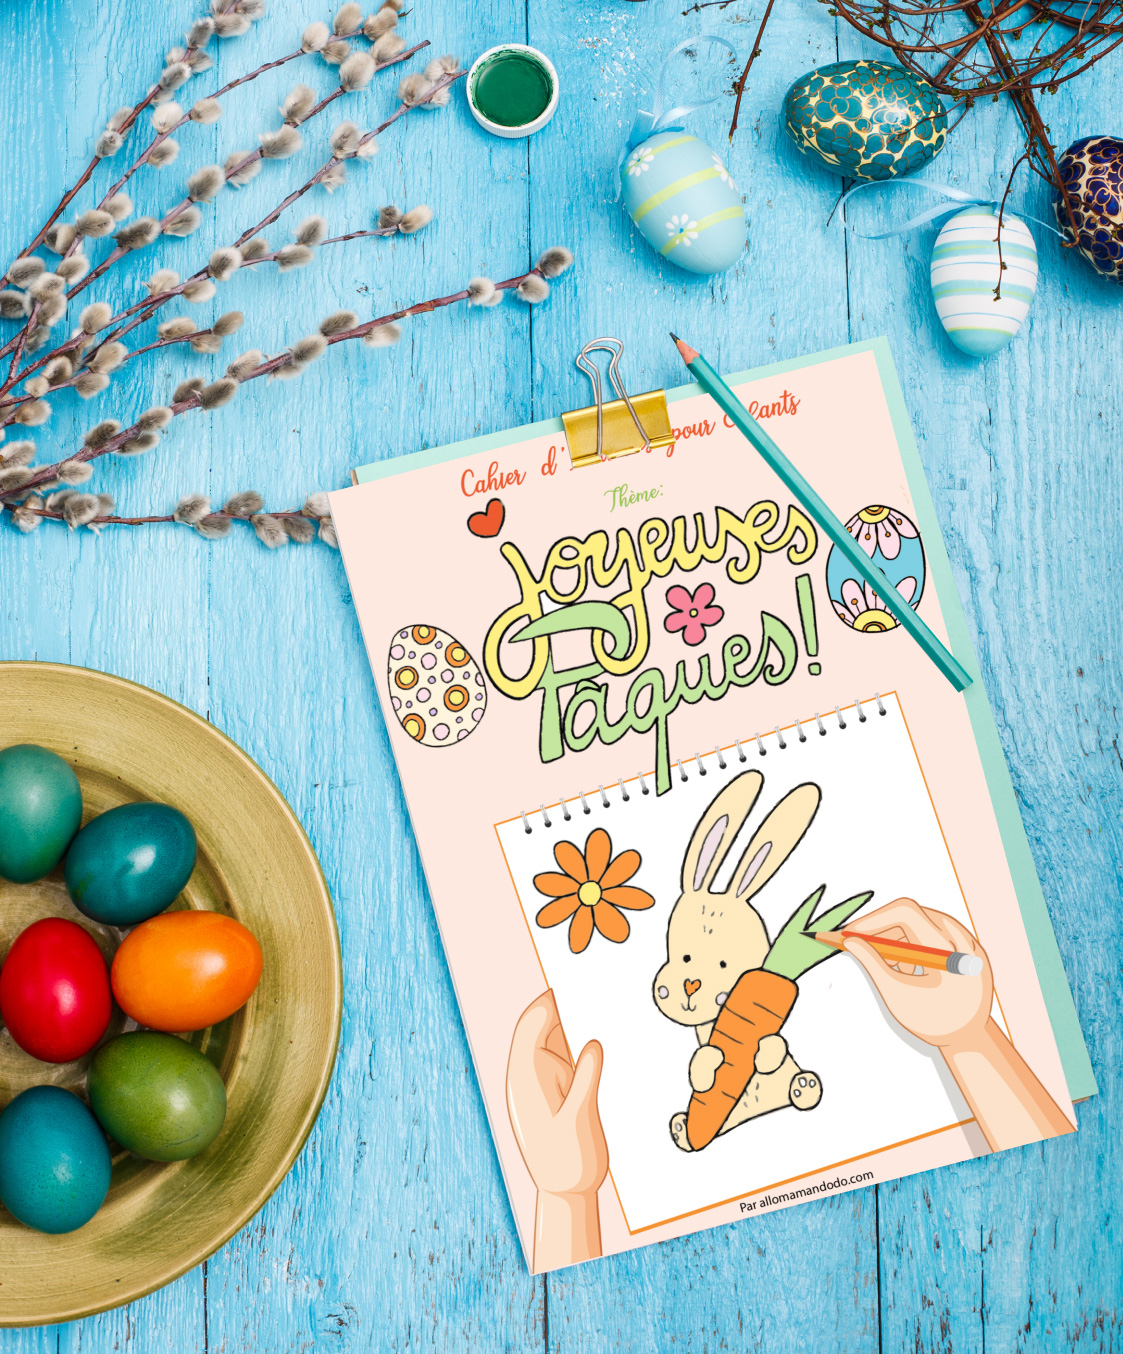 Cahier de coloriages et jeux pour Pâques